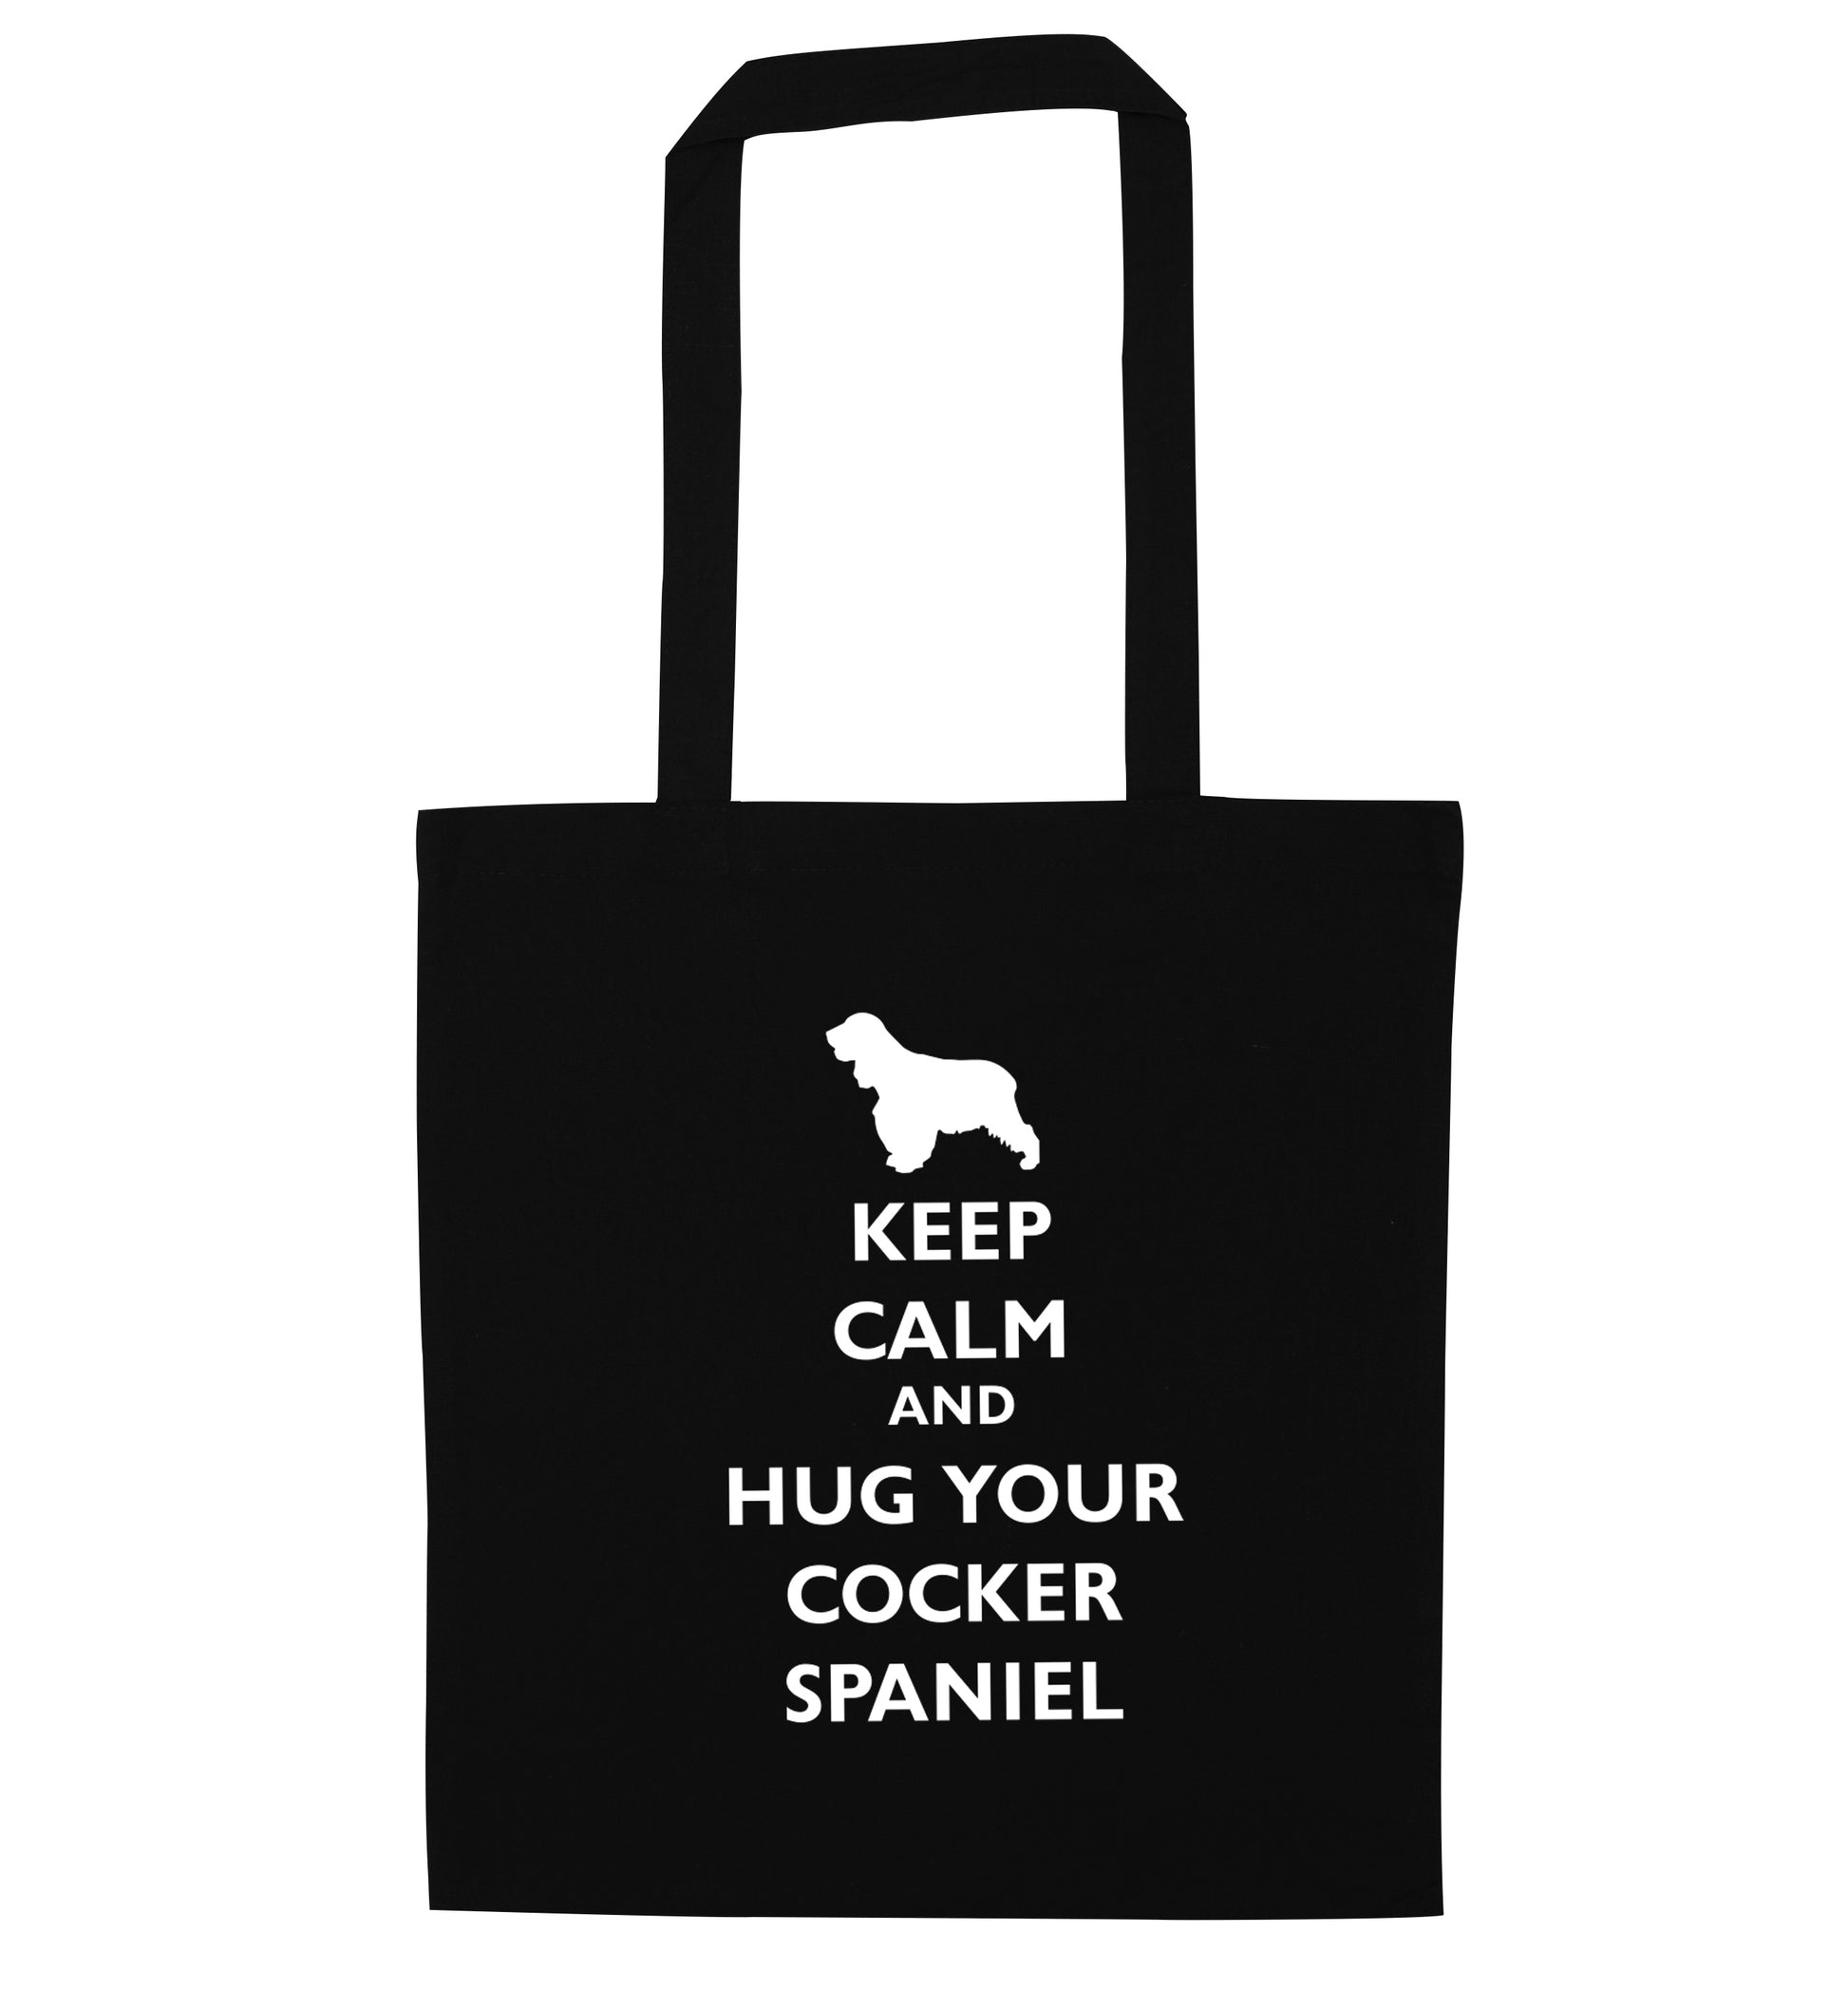 Keep calm and hug your cocker spaniel black tote bag